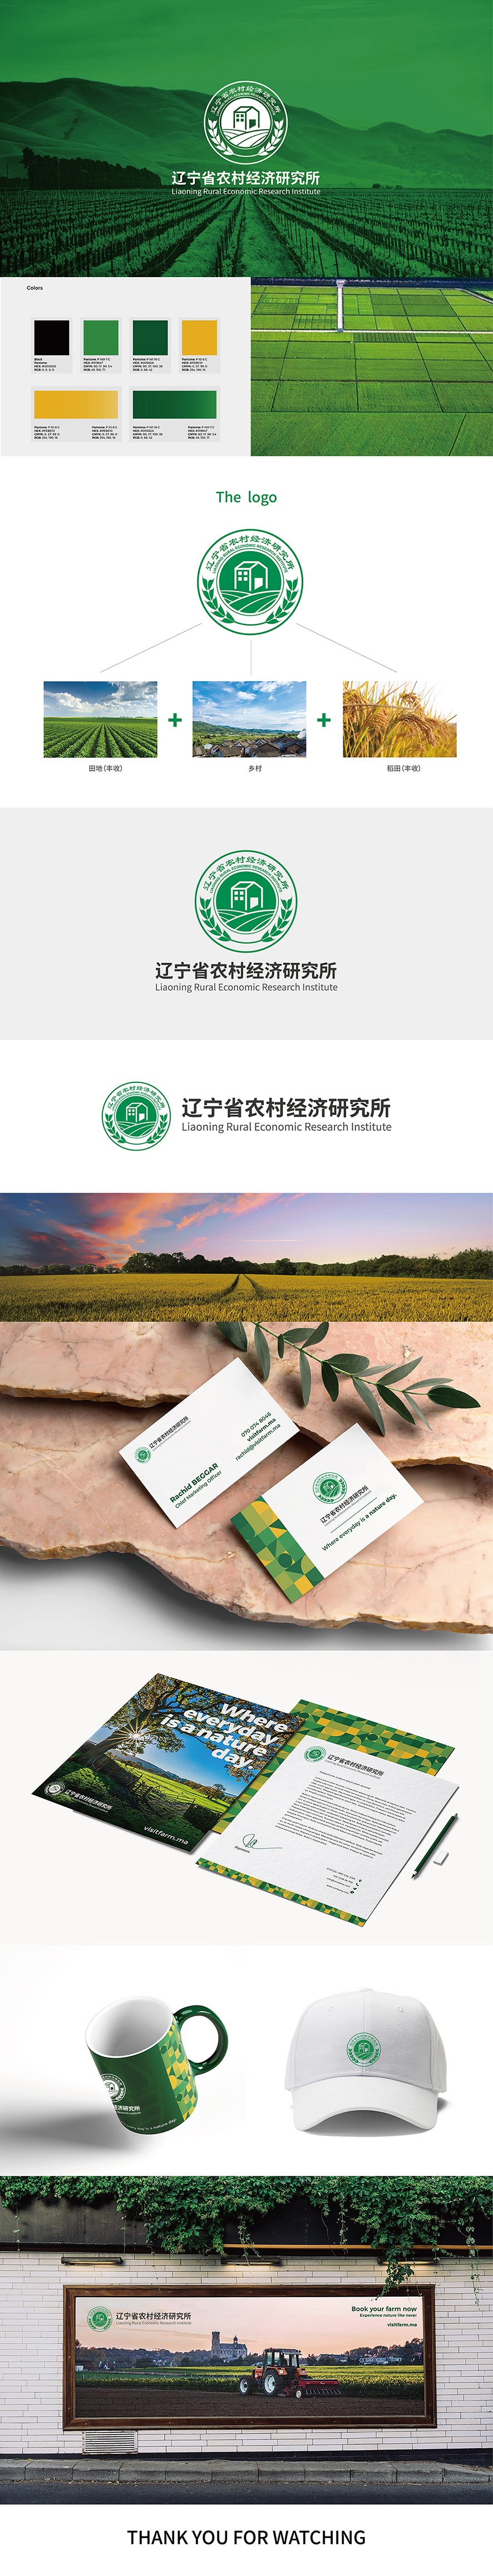 遼寧省農科院  農村經濟研究所logo設計圖0